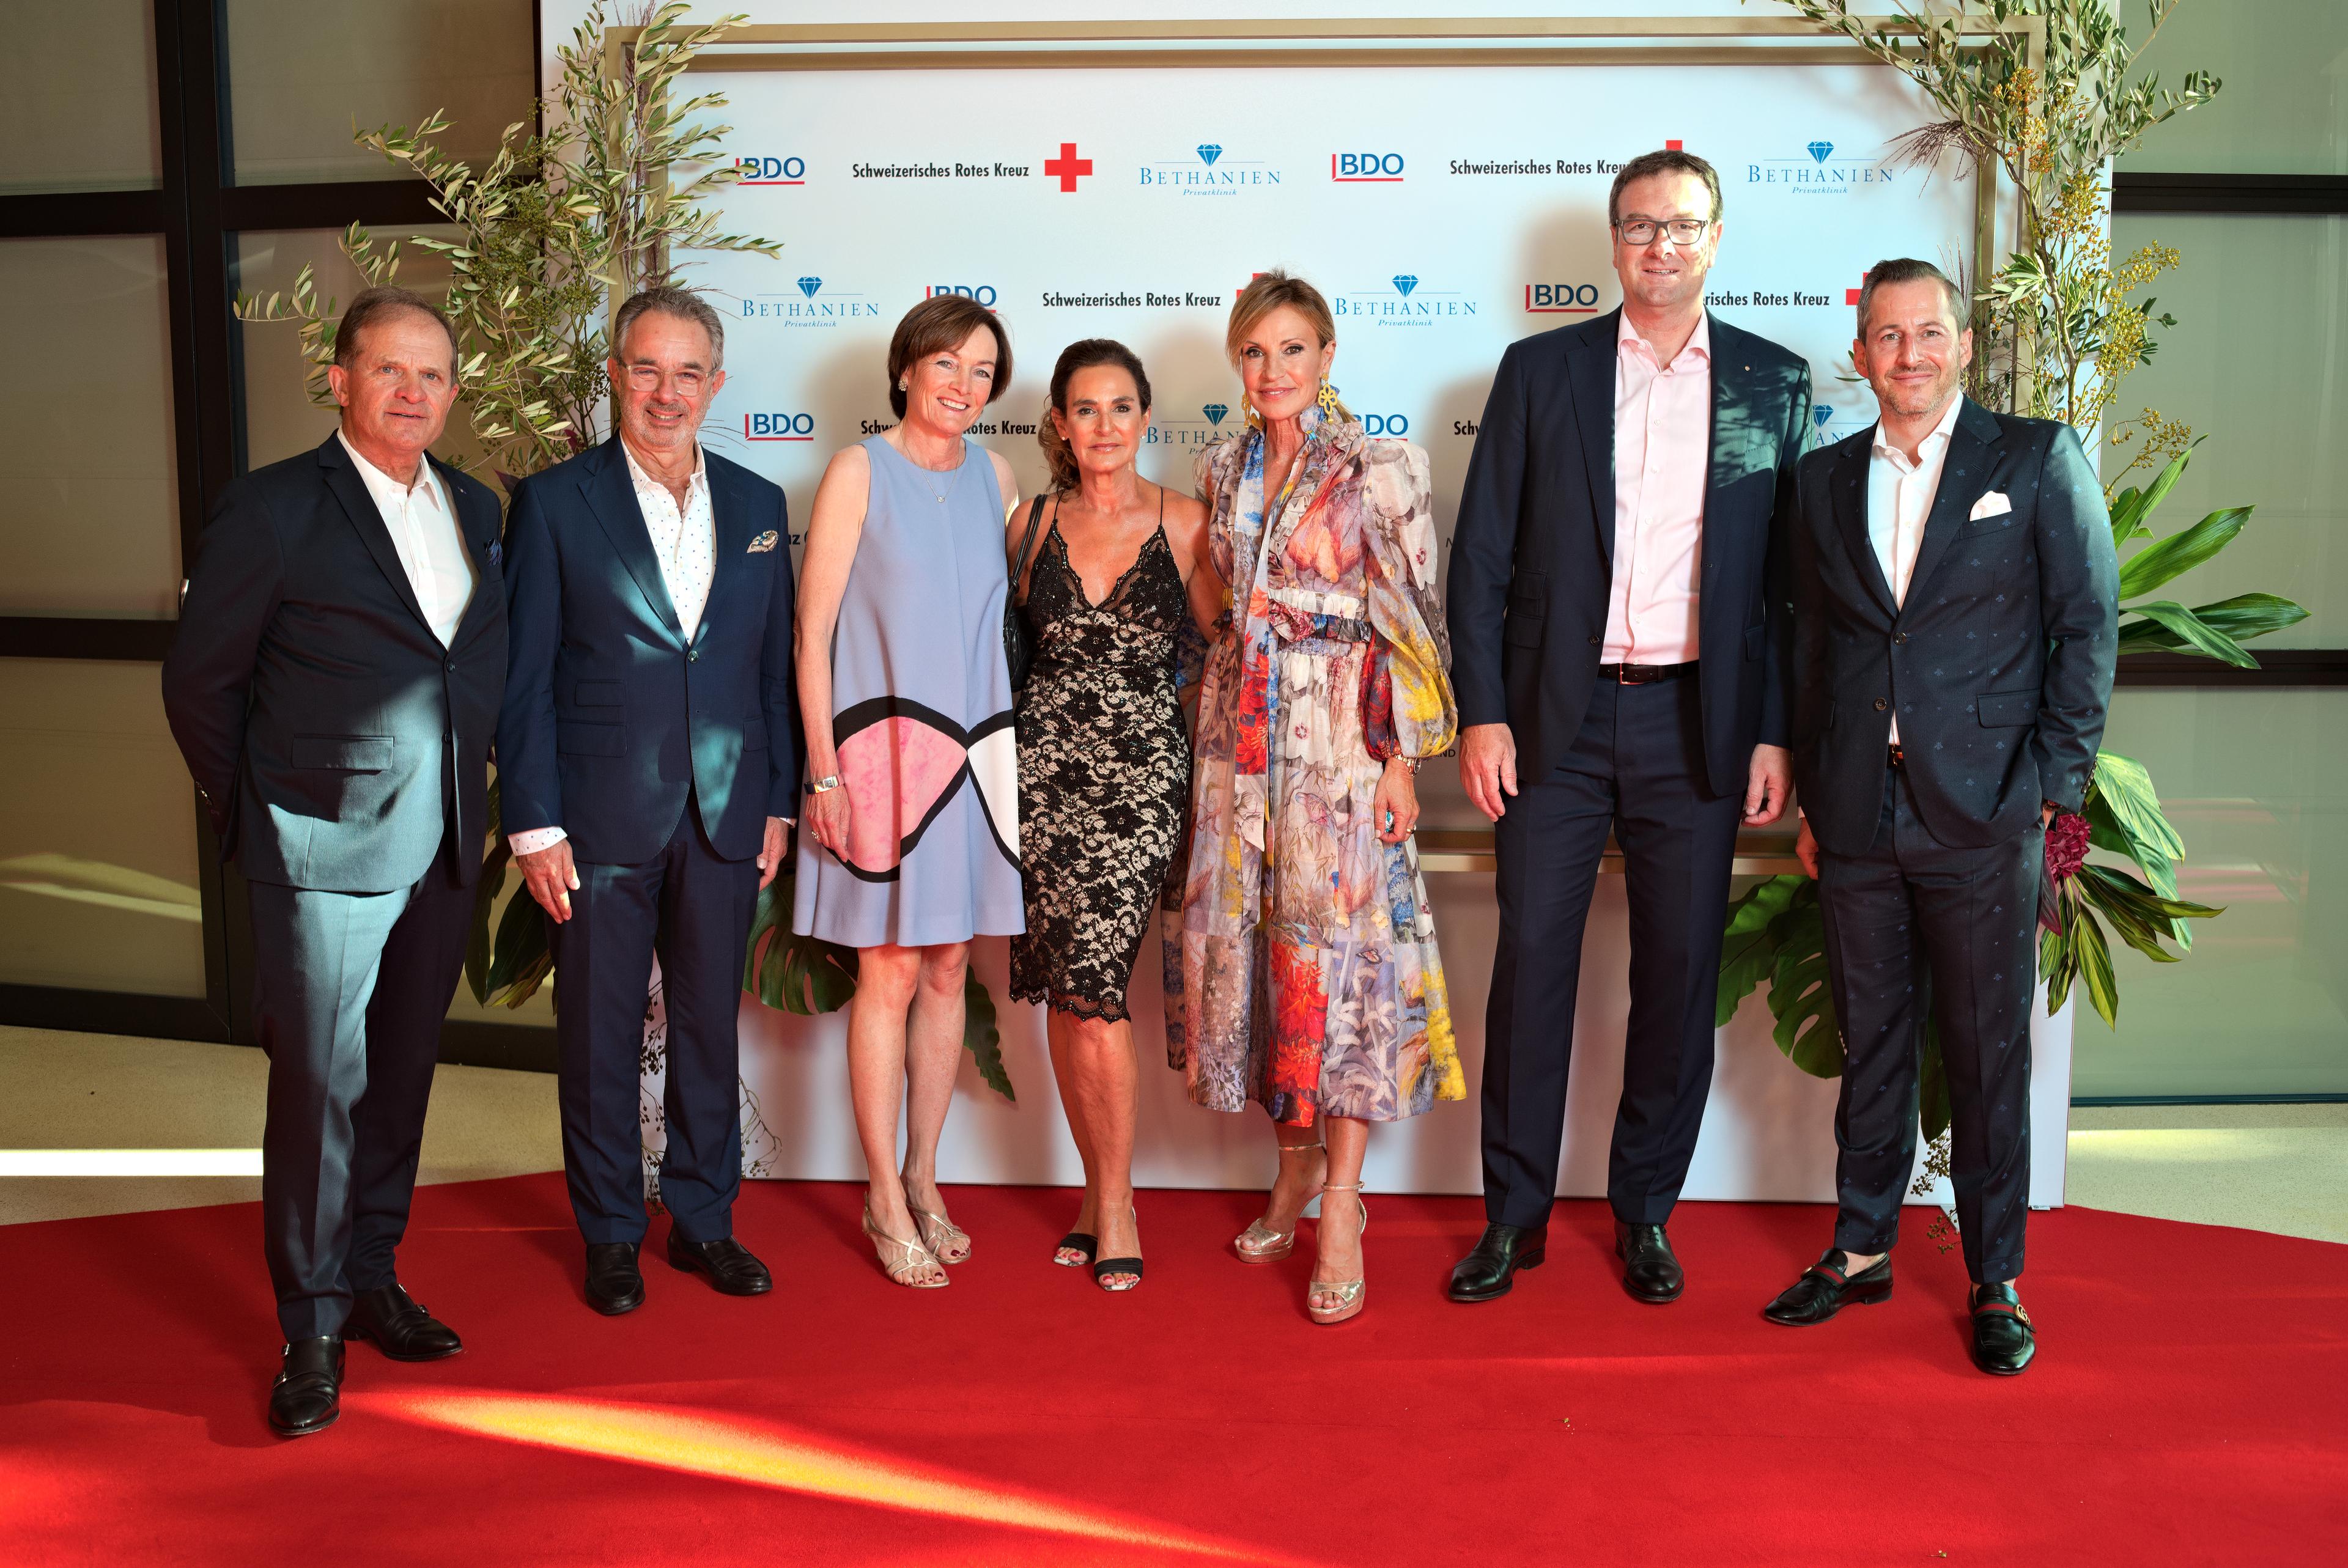 Beispiel einer Sponsoring-Partnerschaft: das Komitee der Rotkreuz-Gala Zürich vor der Sponsorenwand.